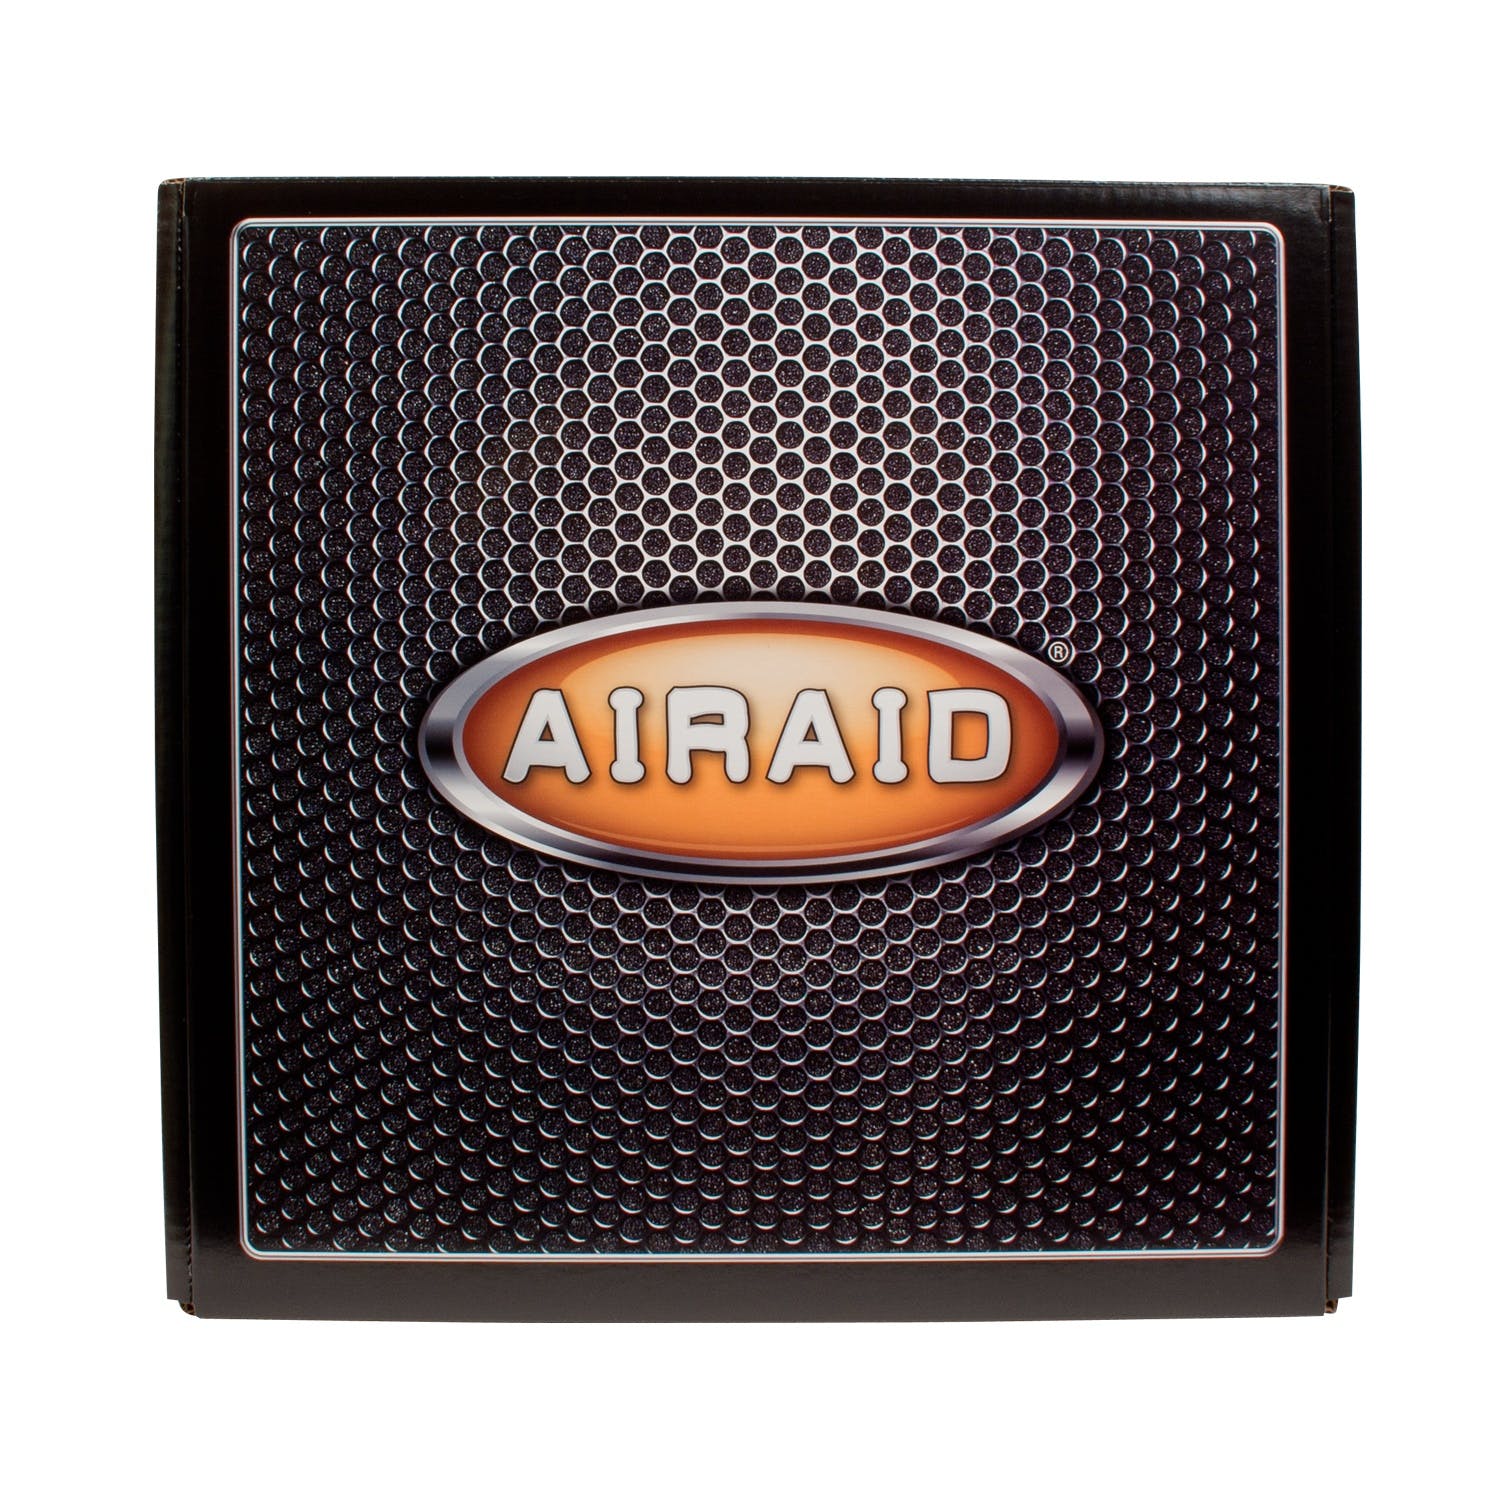 AIRAID 202-145 Performance Air Intake System